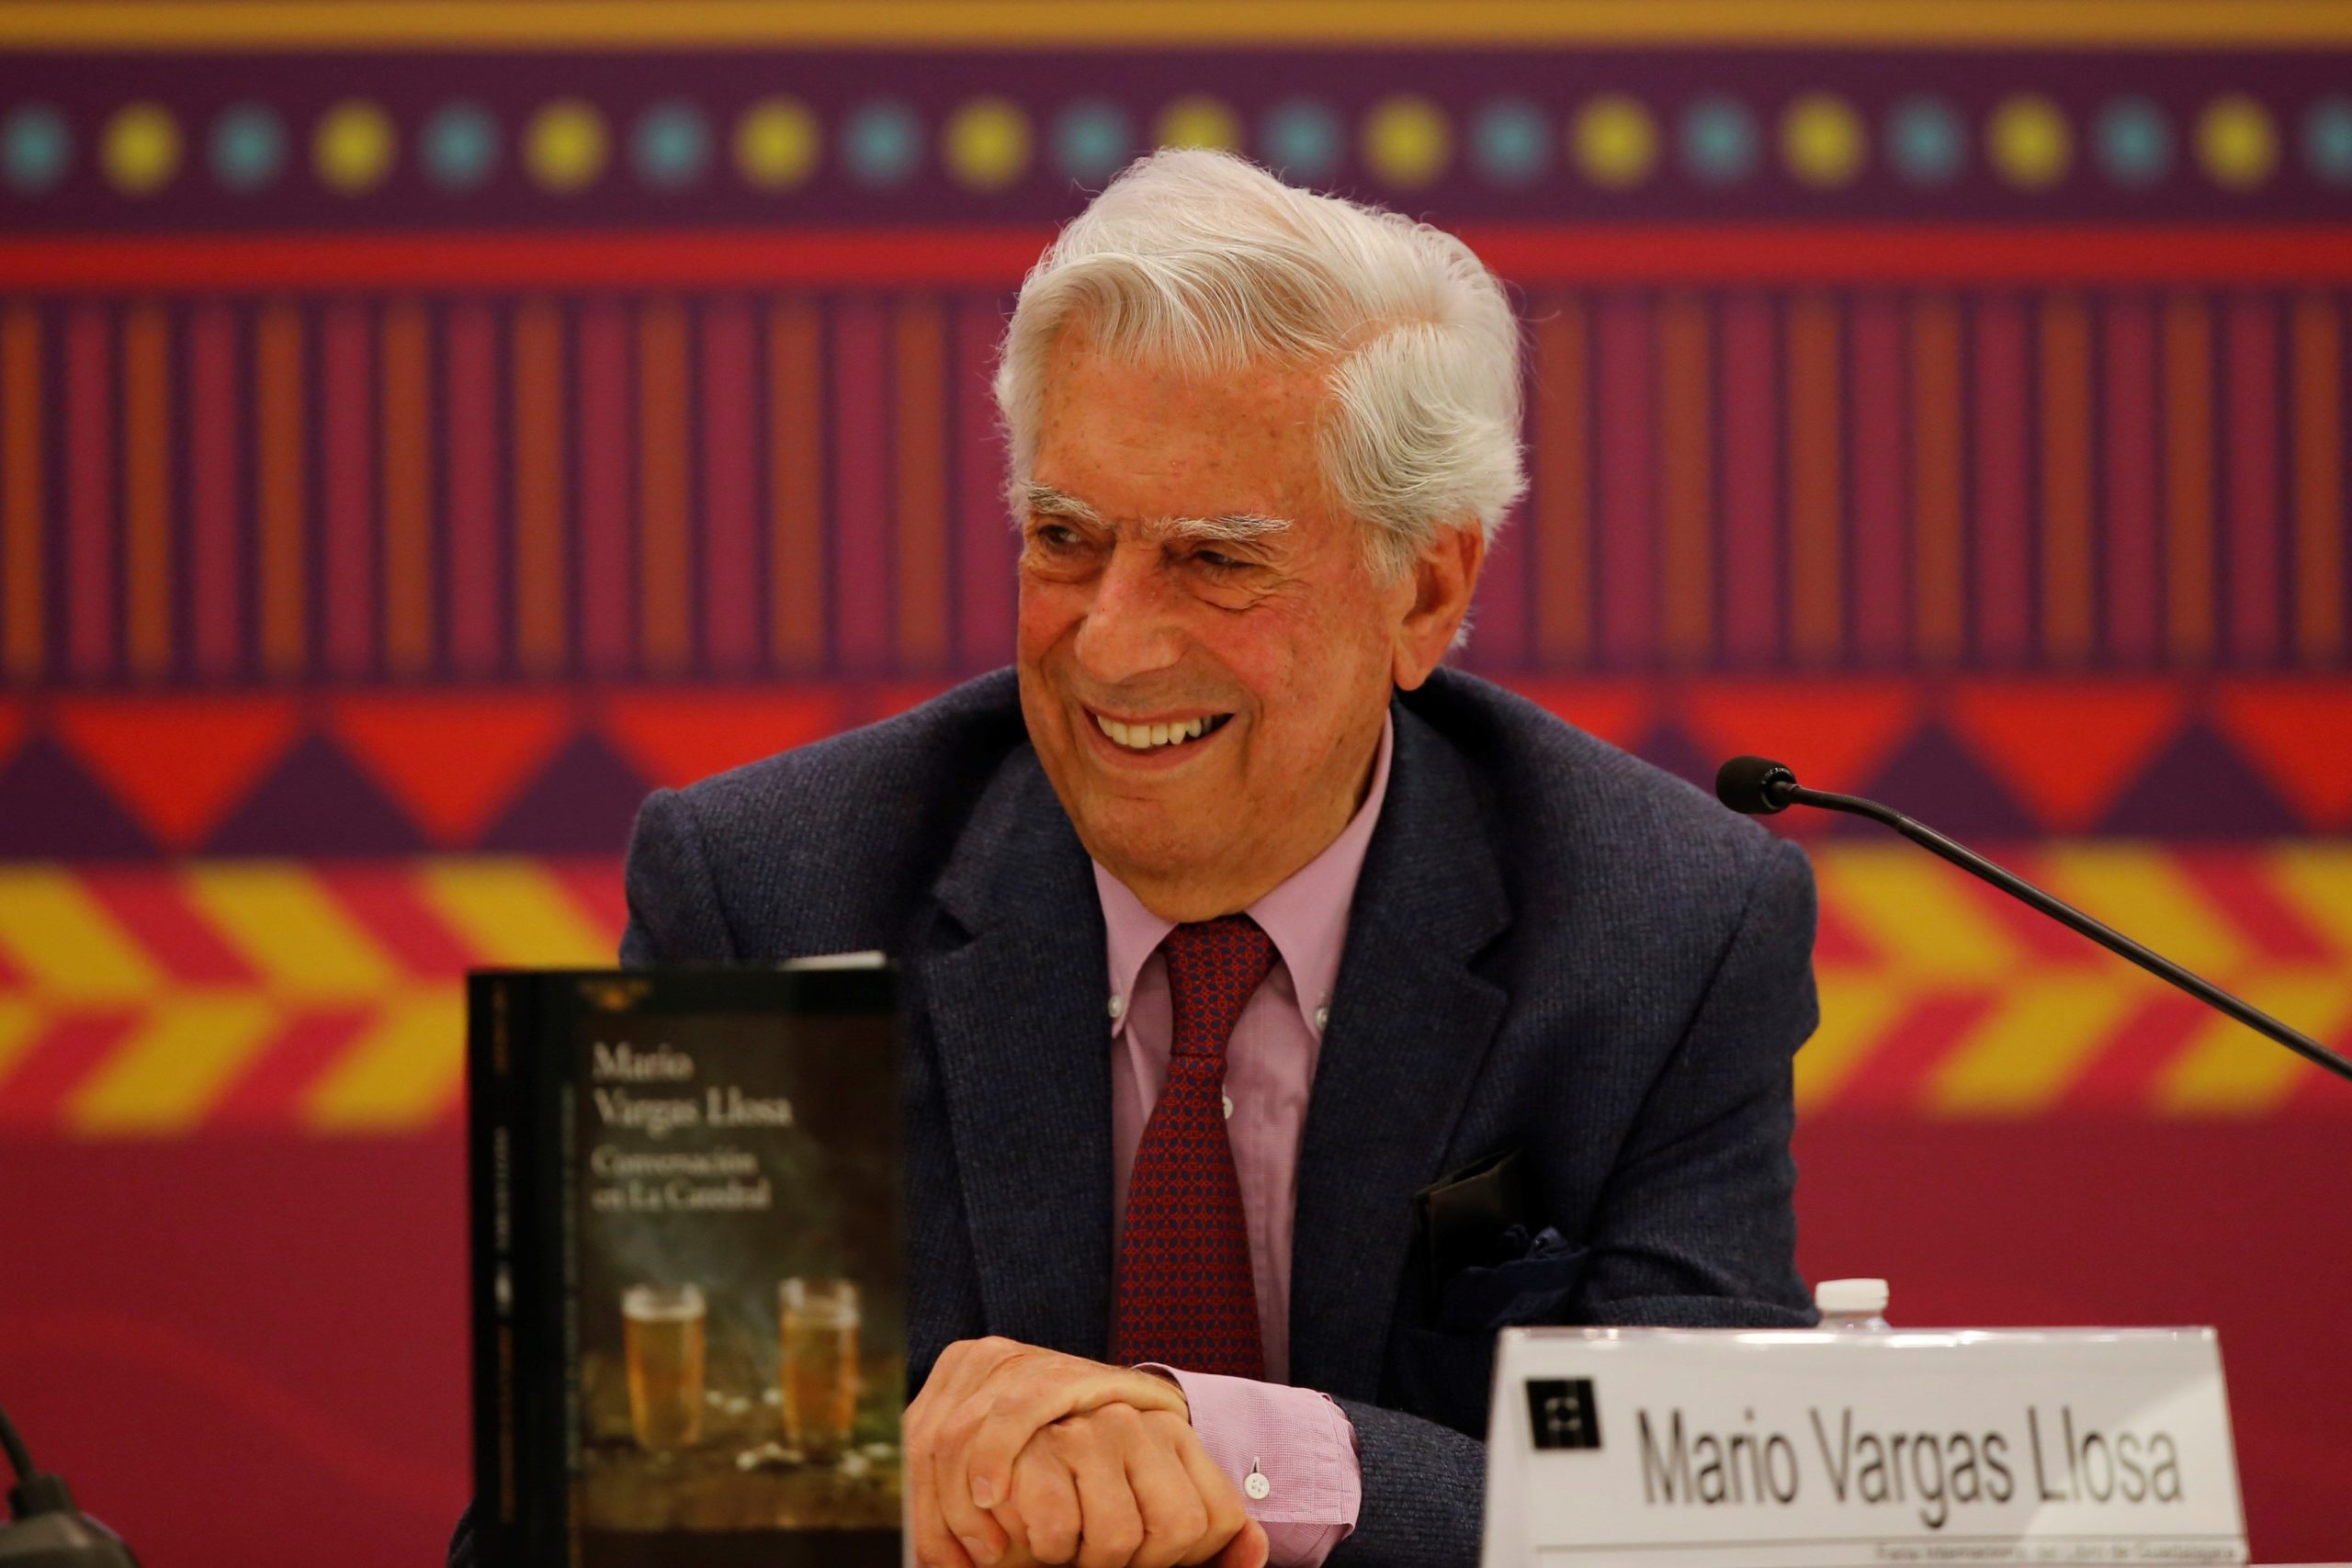 Le lauréat du prix Nobel péruvien Mario Vargas Llosa participe à la commémoration du 50e anniversaire de son roman Conversation in the Cathedral, à la Foire internationale du livre de Guadalajara, Mexique, 30 novembre 2019. © EFE/ Francisco Guasco//EFE_20191201-637107680309635930/1912010351/Credit:Francisco Guasco/EFE/SIPA/1912010754